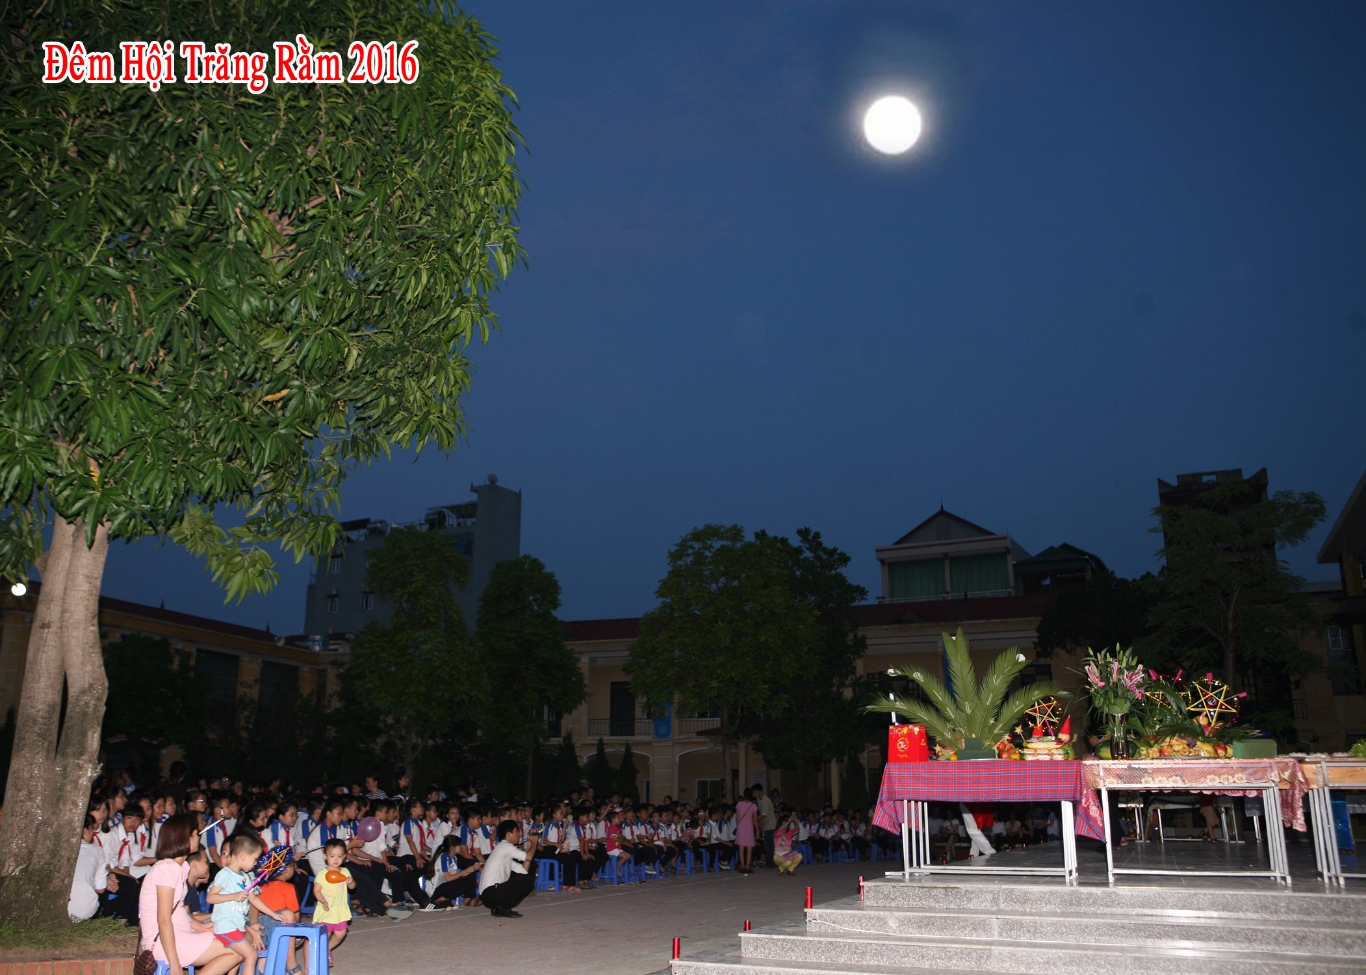 Trường THCS Văn Khê tổ chức "Đêm hội trăng rằm”